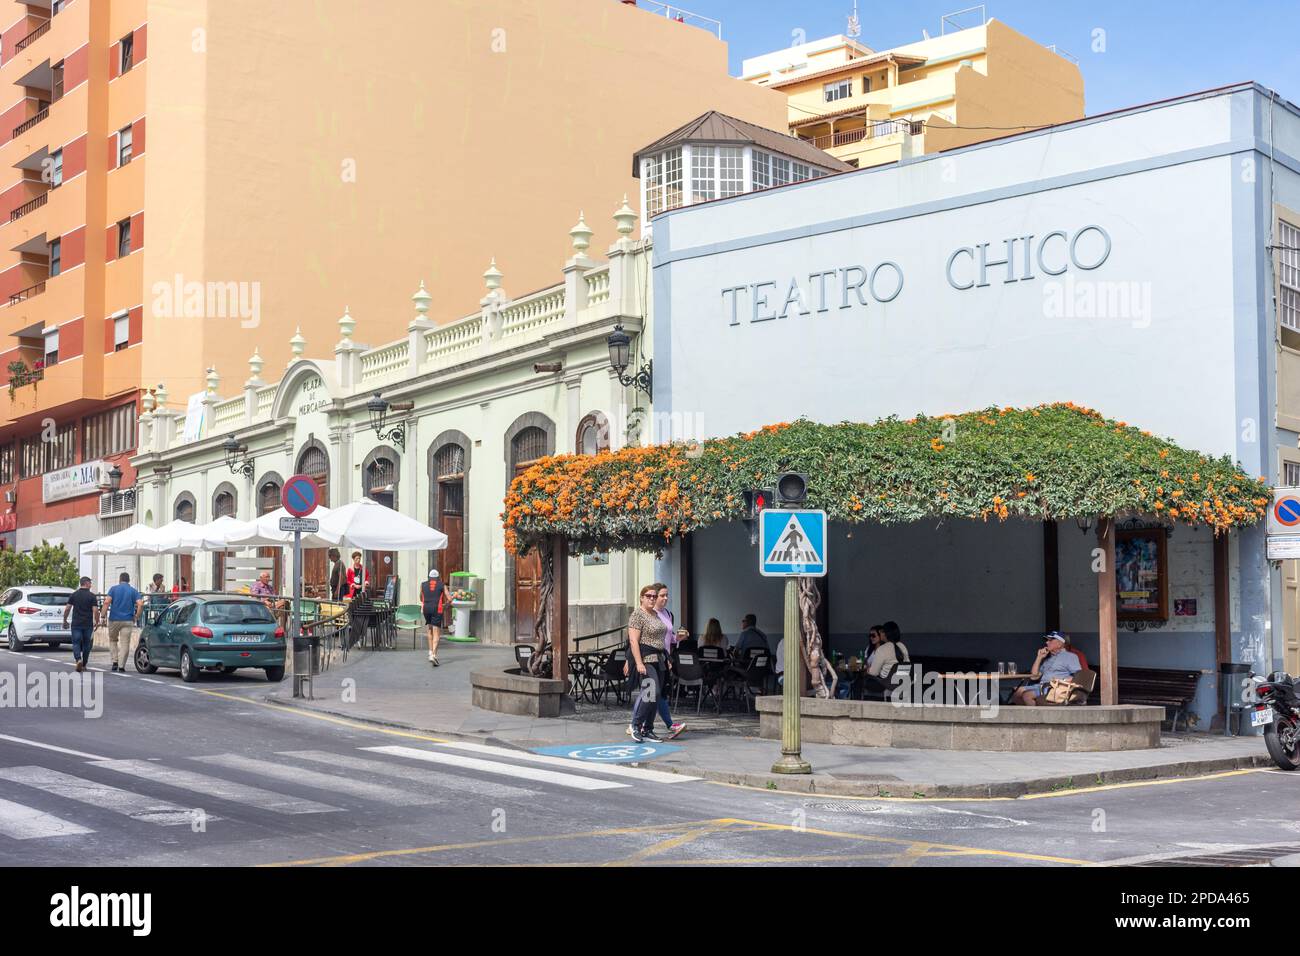 Teatro Chico and Plaza de Mercado,  Avenue el Puente, Santa Cruz de La Palma, La Palma, Canary Islands, Kingdom of Spain Stock Photo